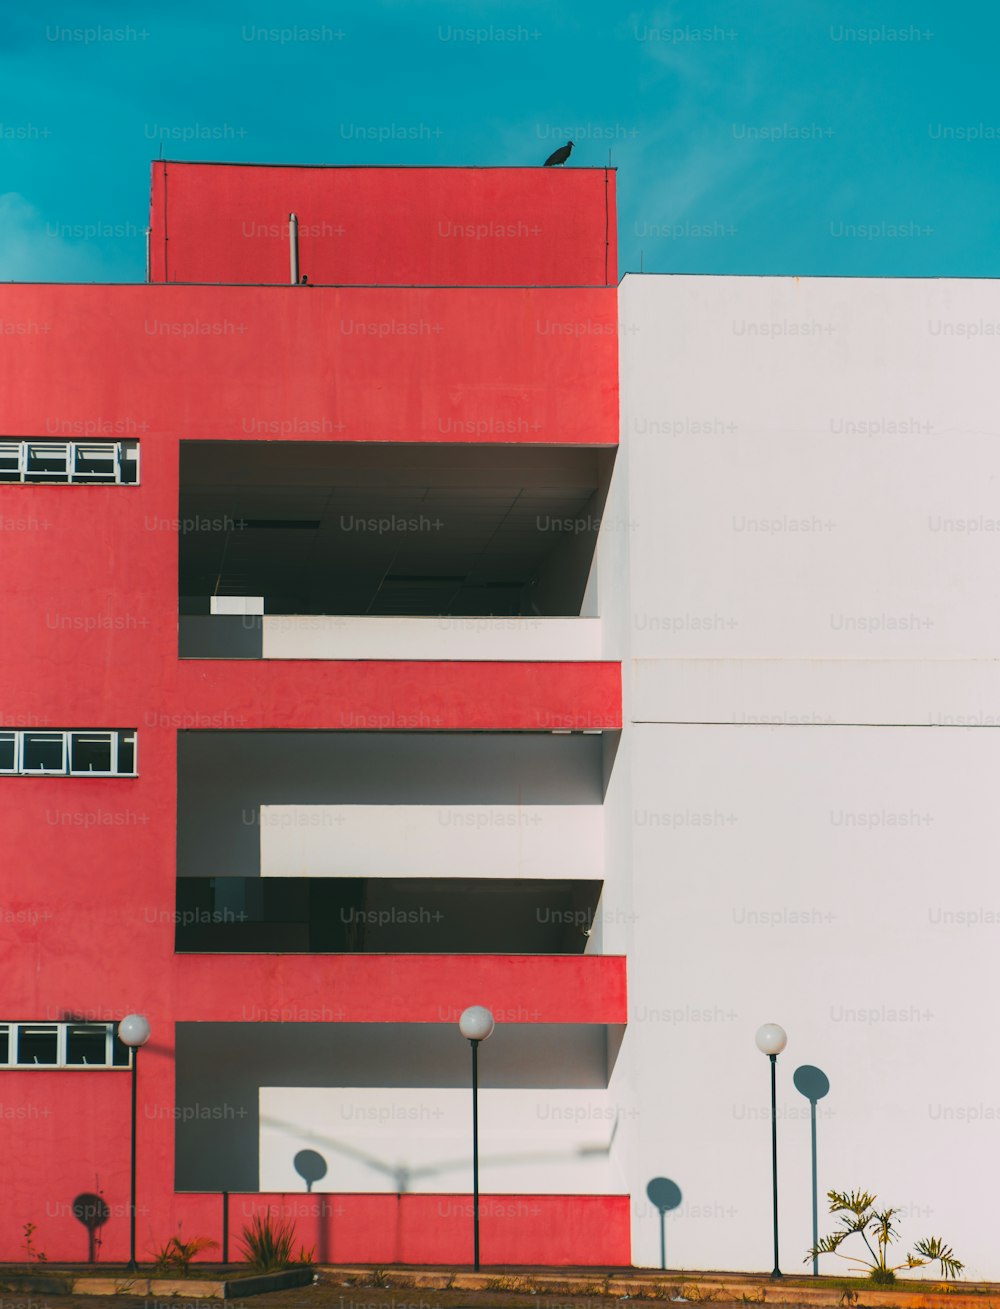 La façade du bâtiment moderne est divisée en deux : une partie de la façade est rouge et a des balcons et des fenêtres, une autre partie est blanche ; lanternes en dessous, un énorme oiseau sur le toit, géométrie minimaliste